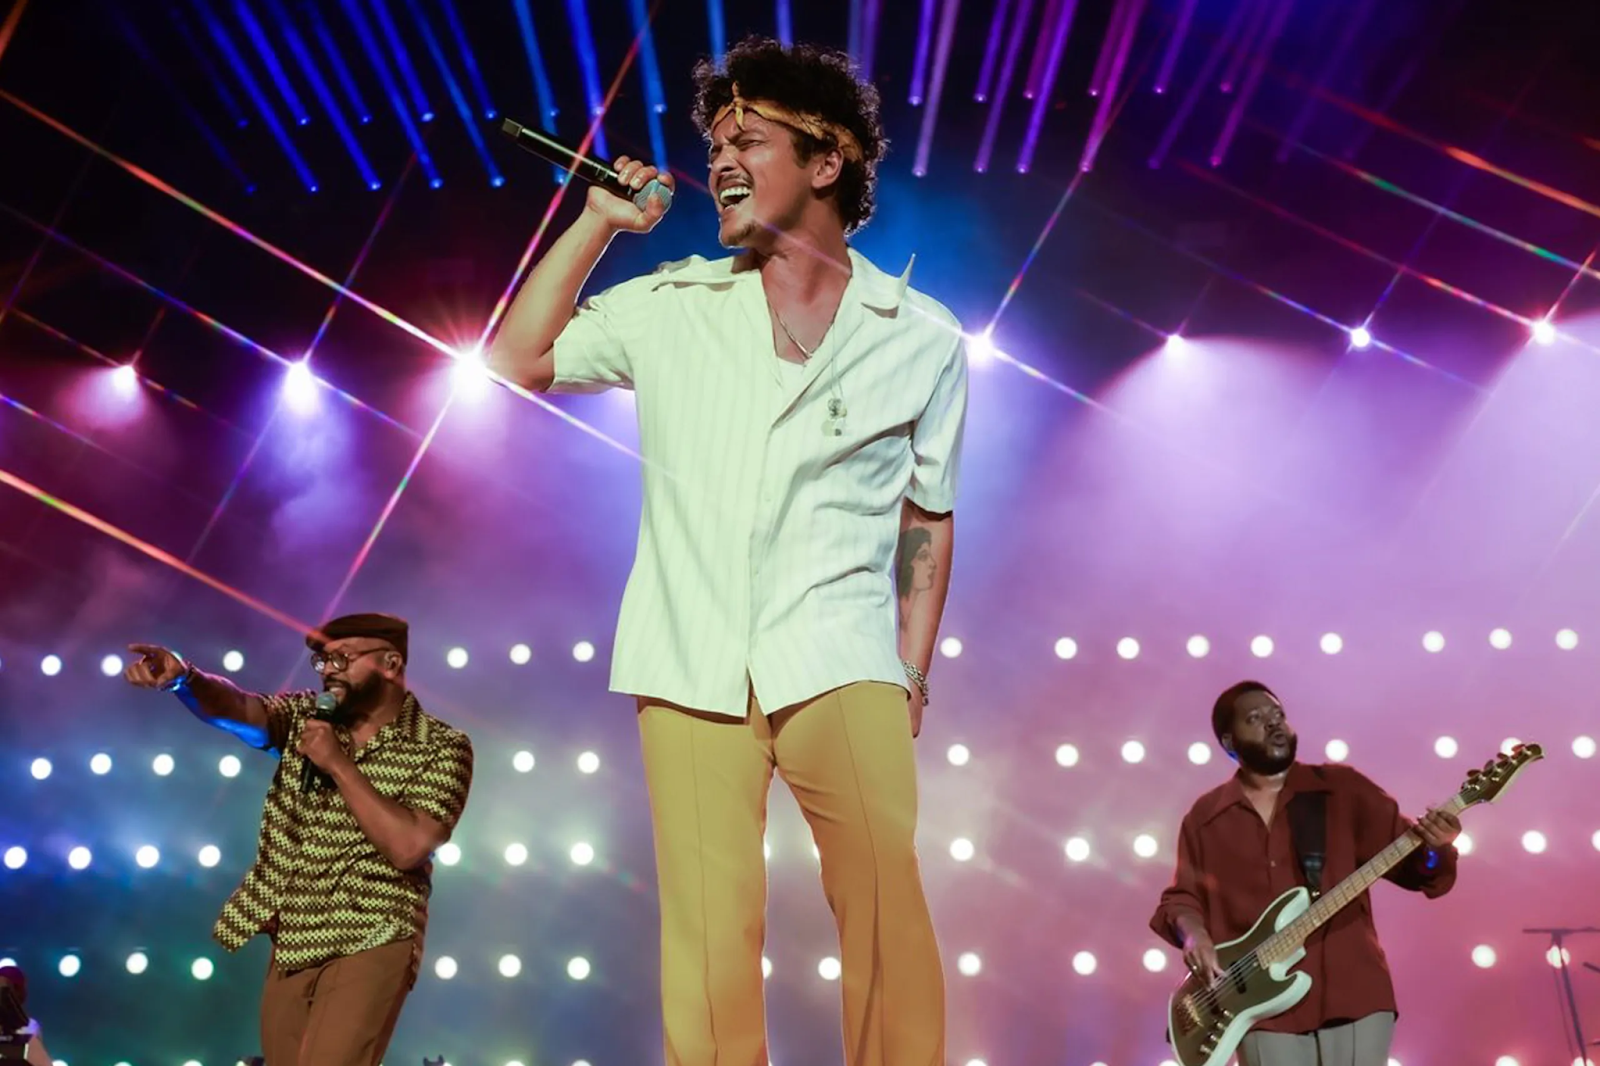 Imagem de conteúdo da notícia "Bruno Mars: Ingressos da pré-venda para shows de São Paulo e Rio esgotam em 1 hora" #1